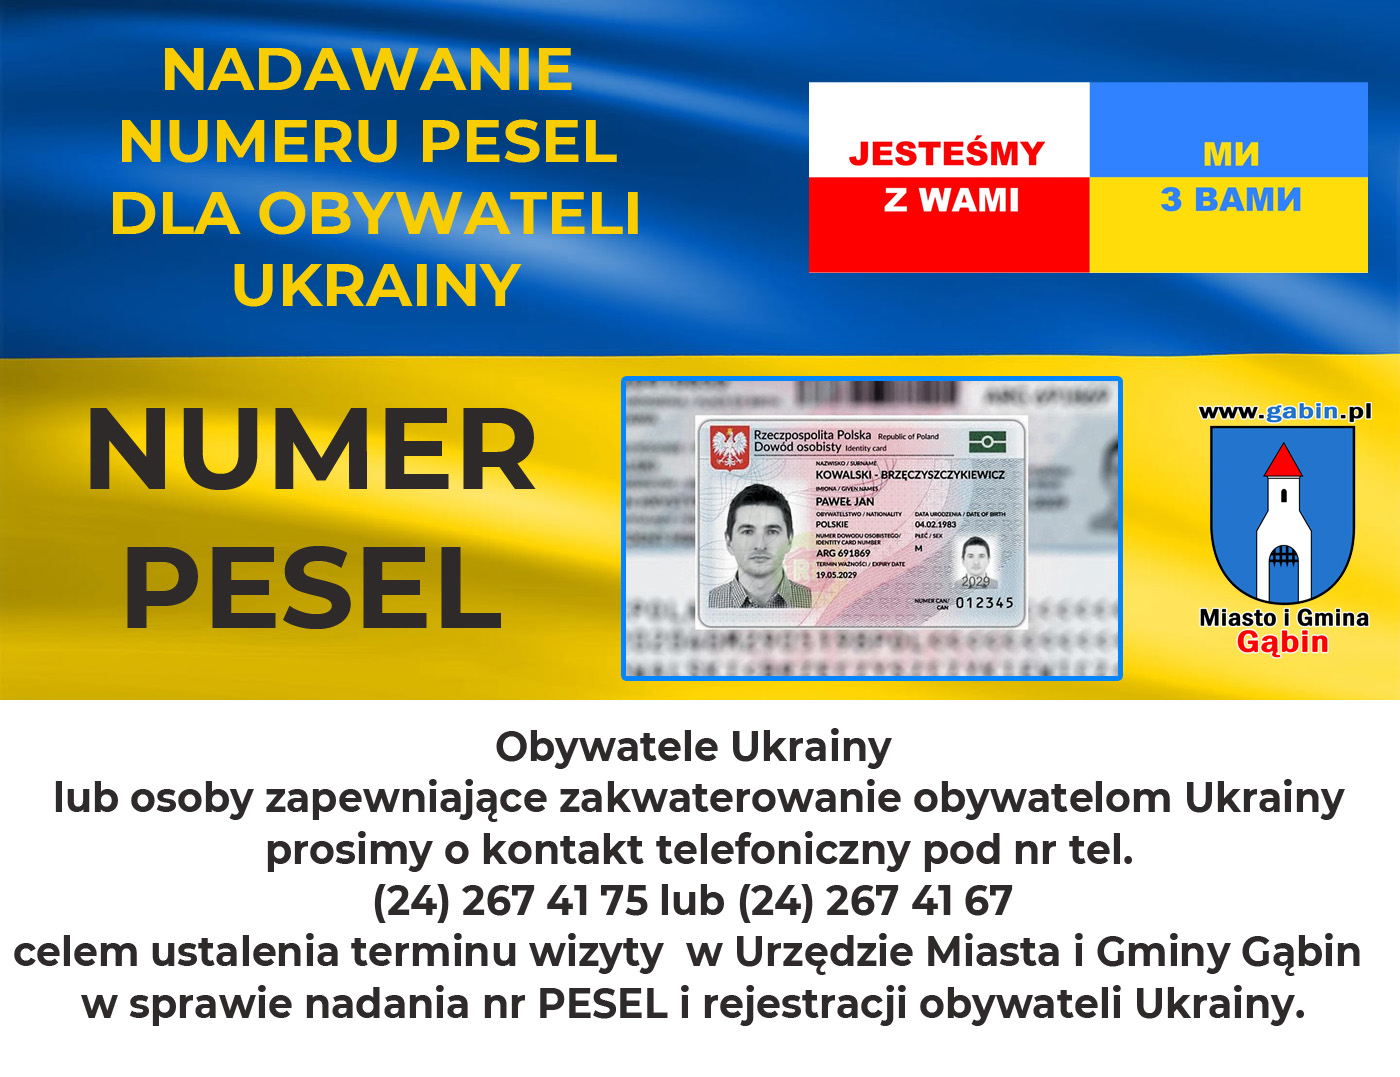 nadawanie numeru pesel dla obywateli ukrainy info 1400pix